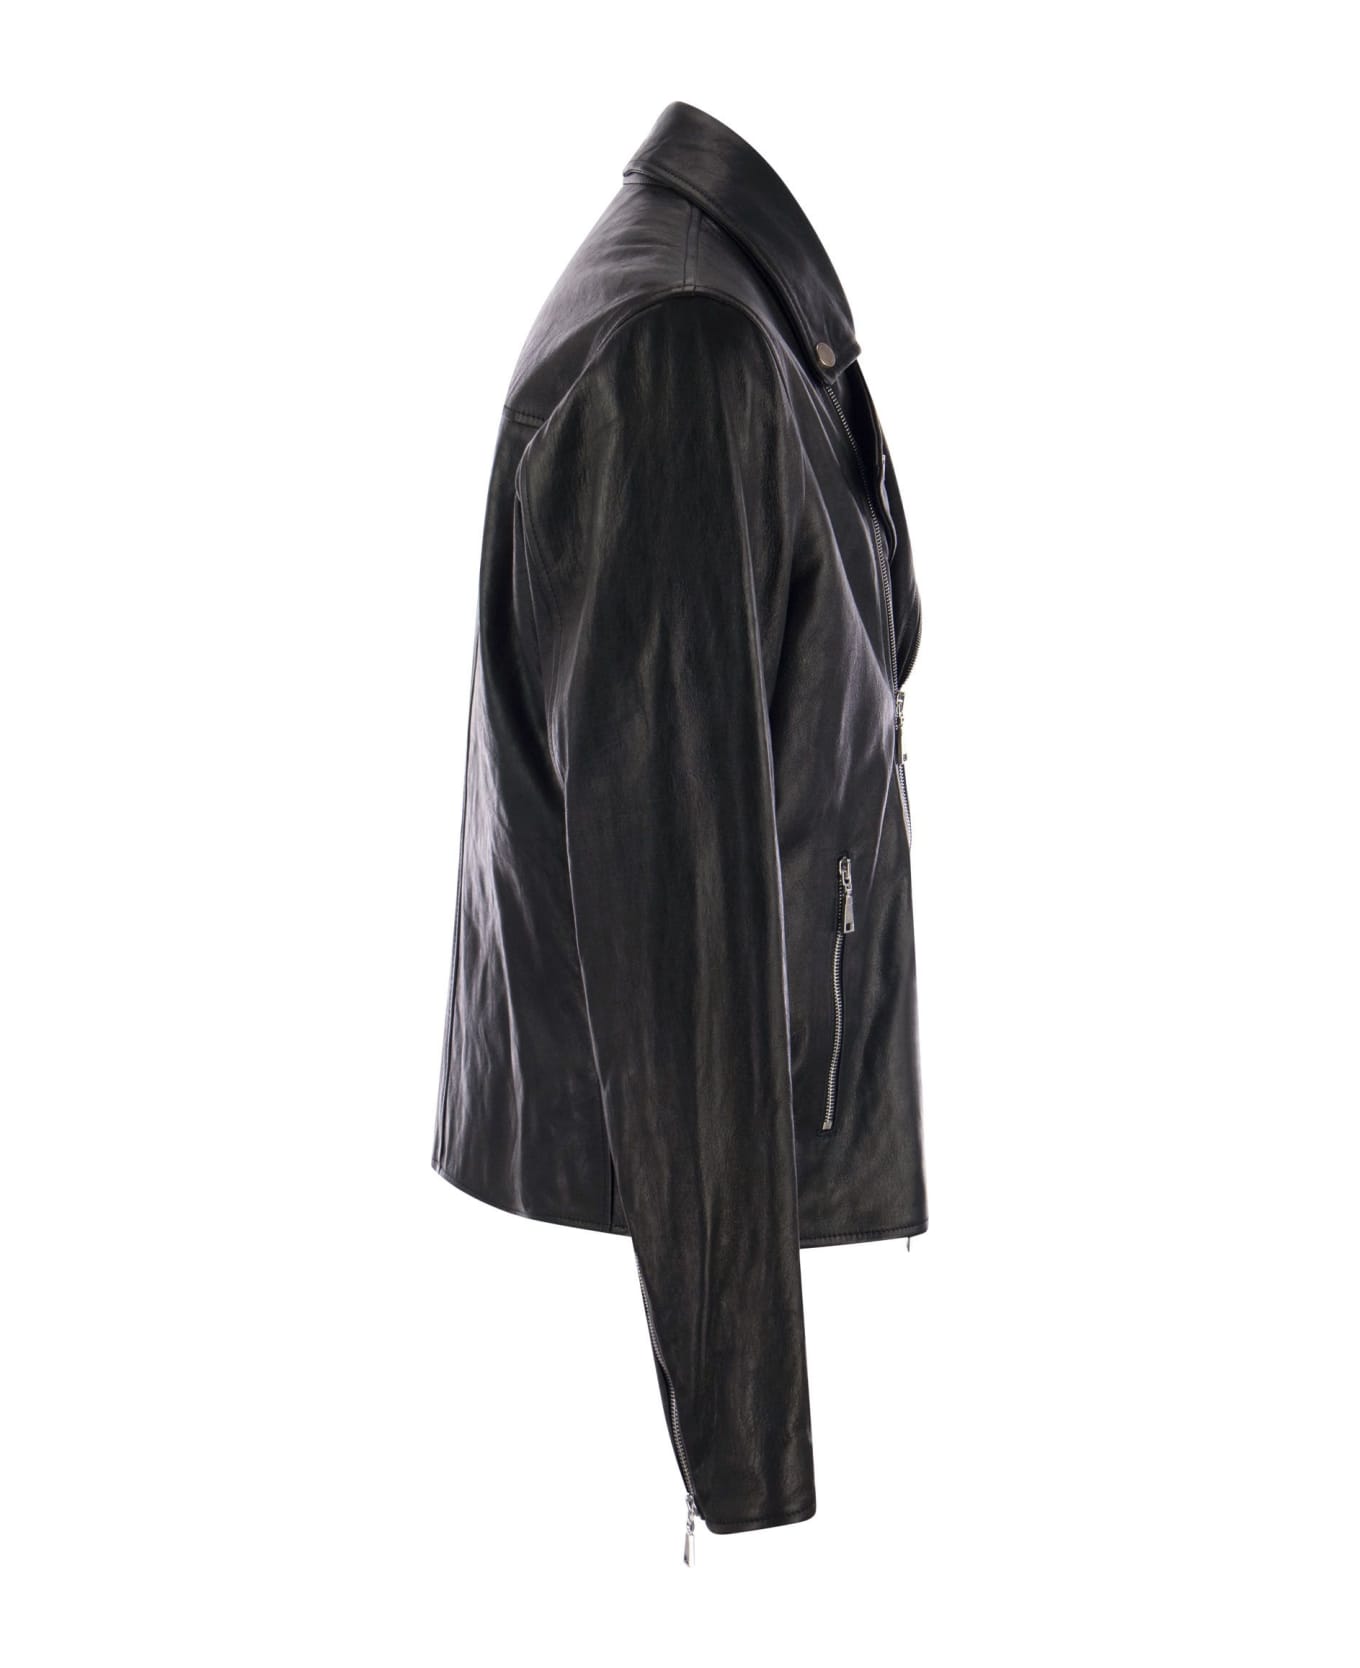 Tagliatore Leather Jacket - Black